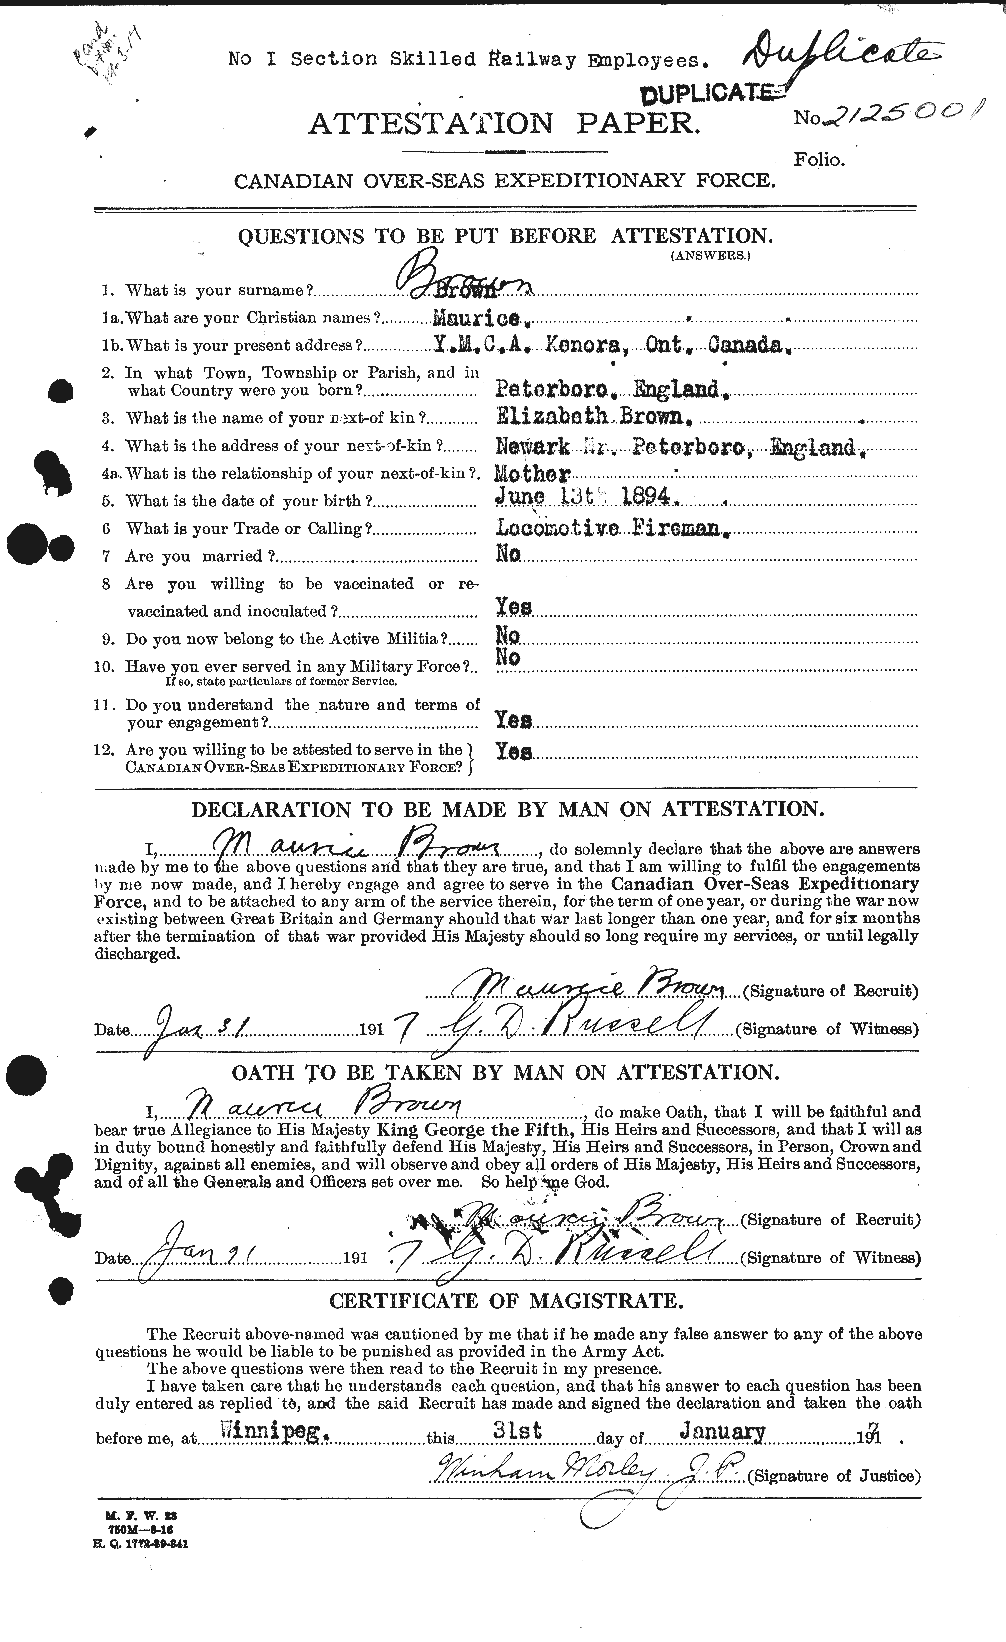 Dossiers du Personnel de la Première Guerre mondiale - CEC 267042a